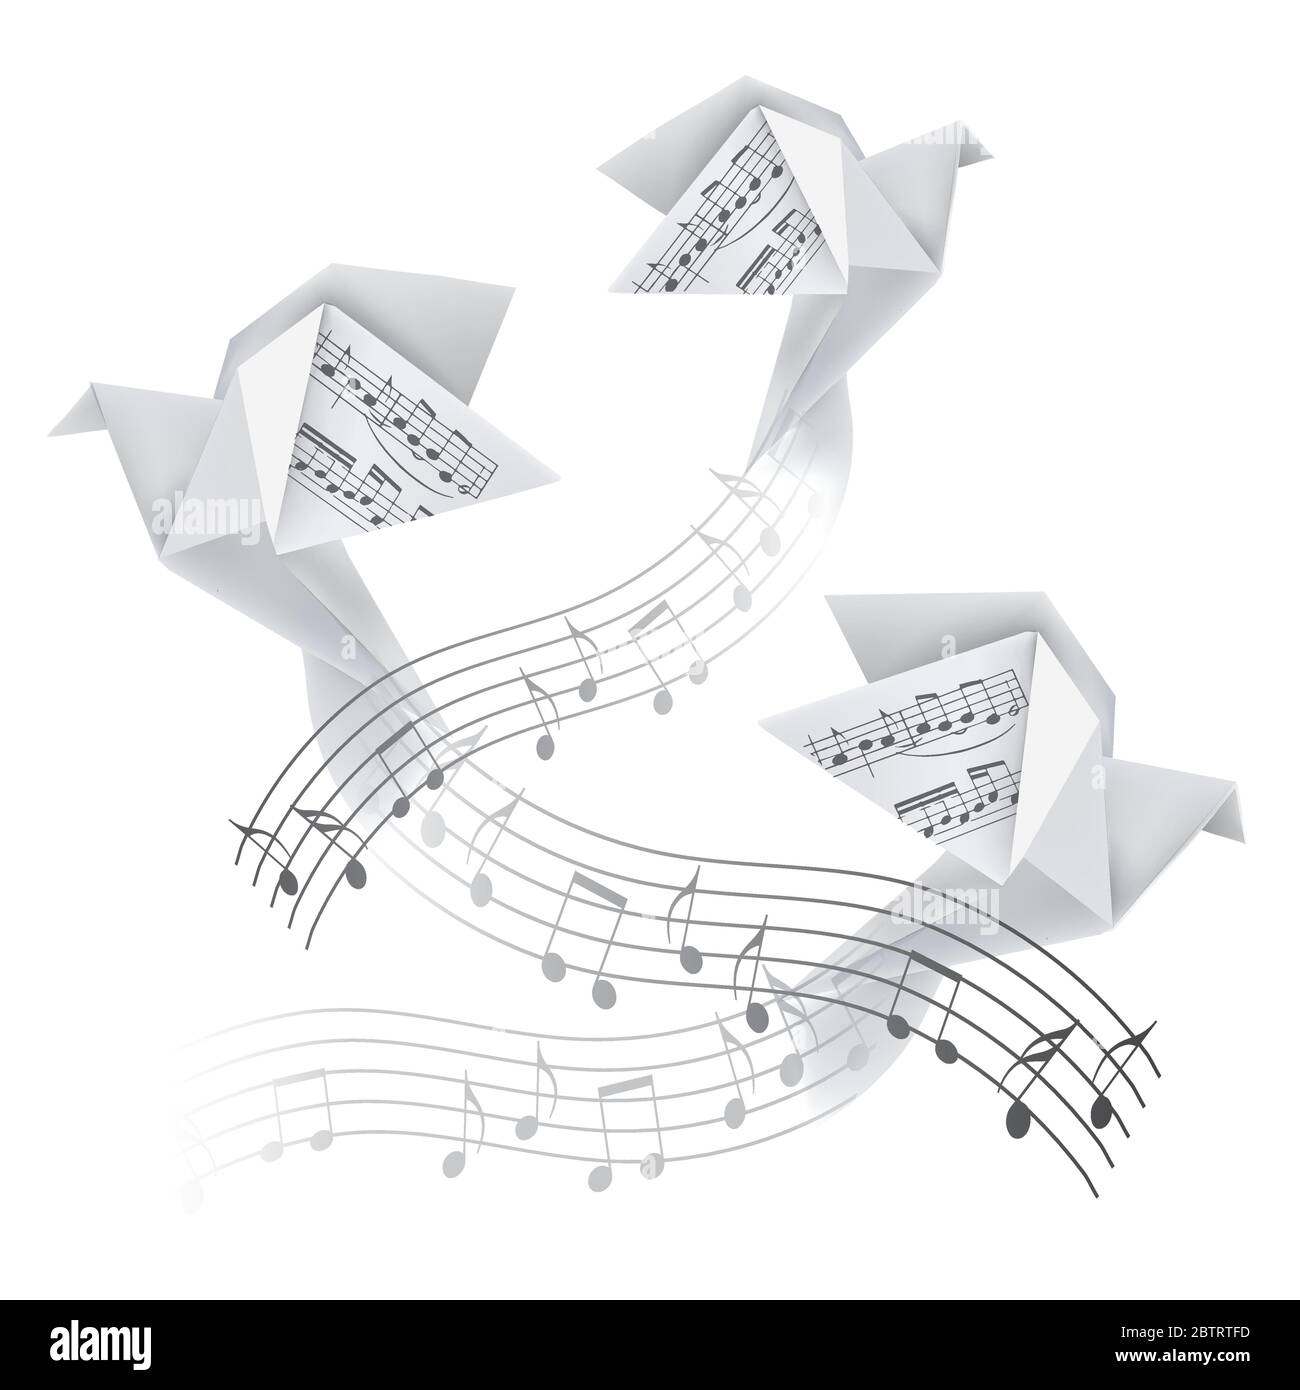 Trois Origami colombes avec des notes musicales. Illustration stylisée de pigeons en papier sur une vague avec des notes musicales. Motif musical poétique. Vecteur disponible. Illustration de Vecteur